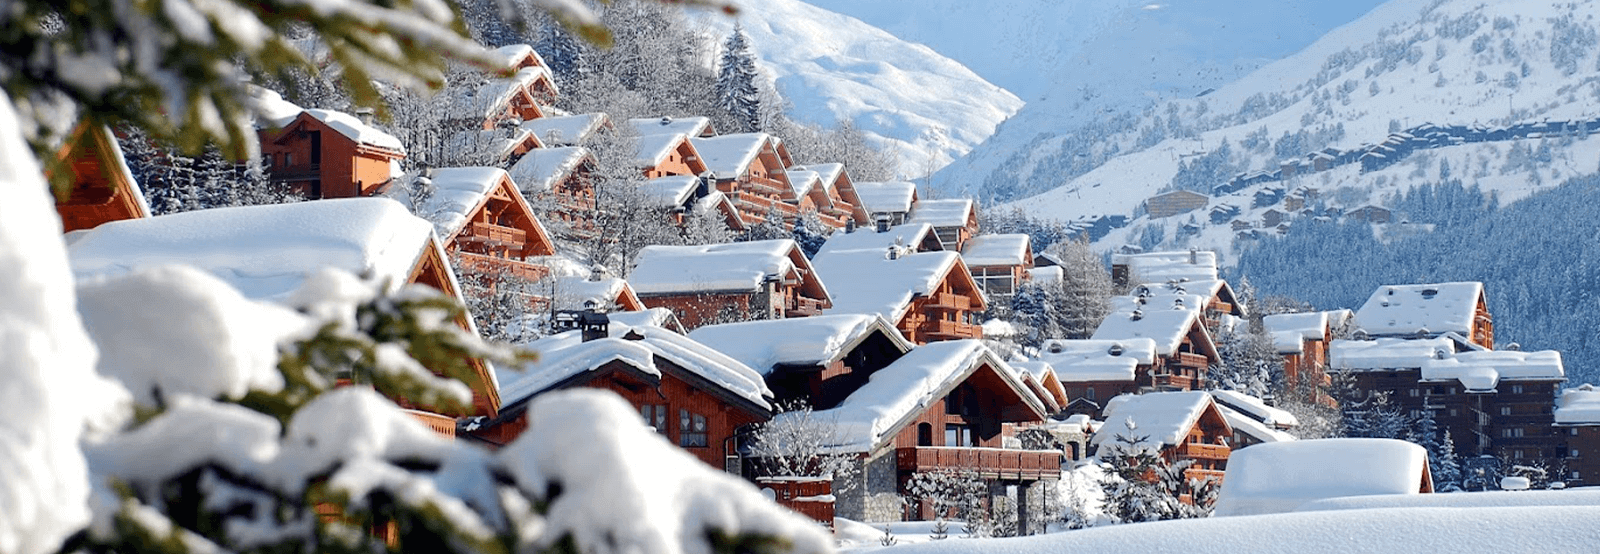 Ski Hotels in France